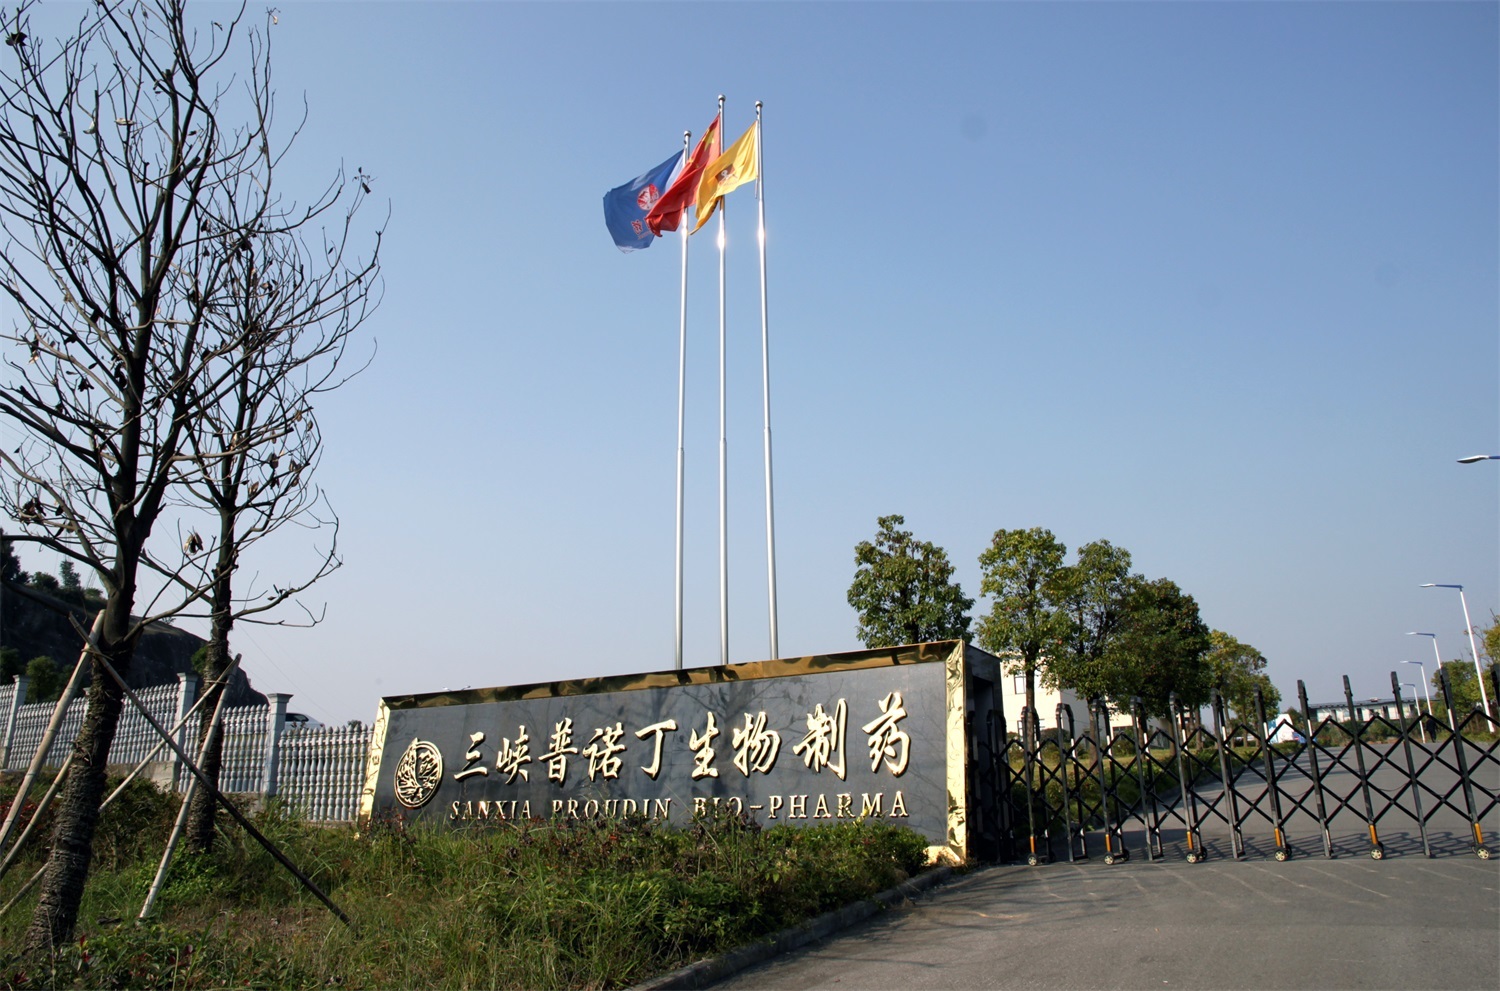 Boas notícias! A empresa ganhou o título de empresa "pequena gigante" na província de Hubei